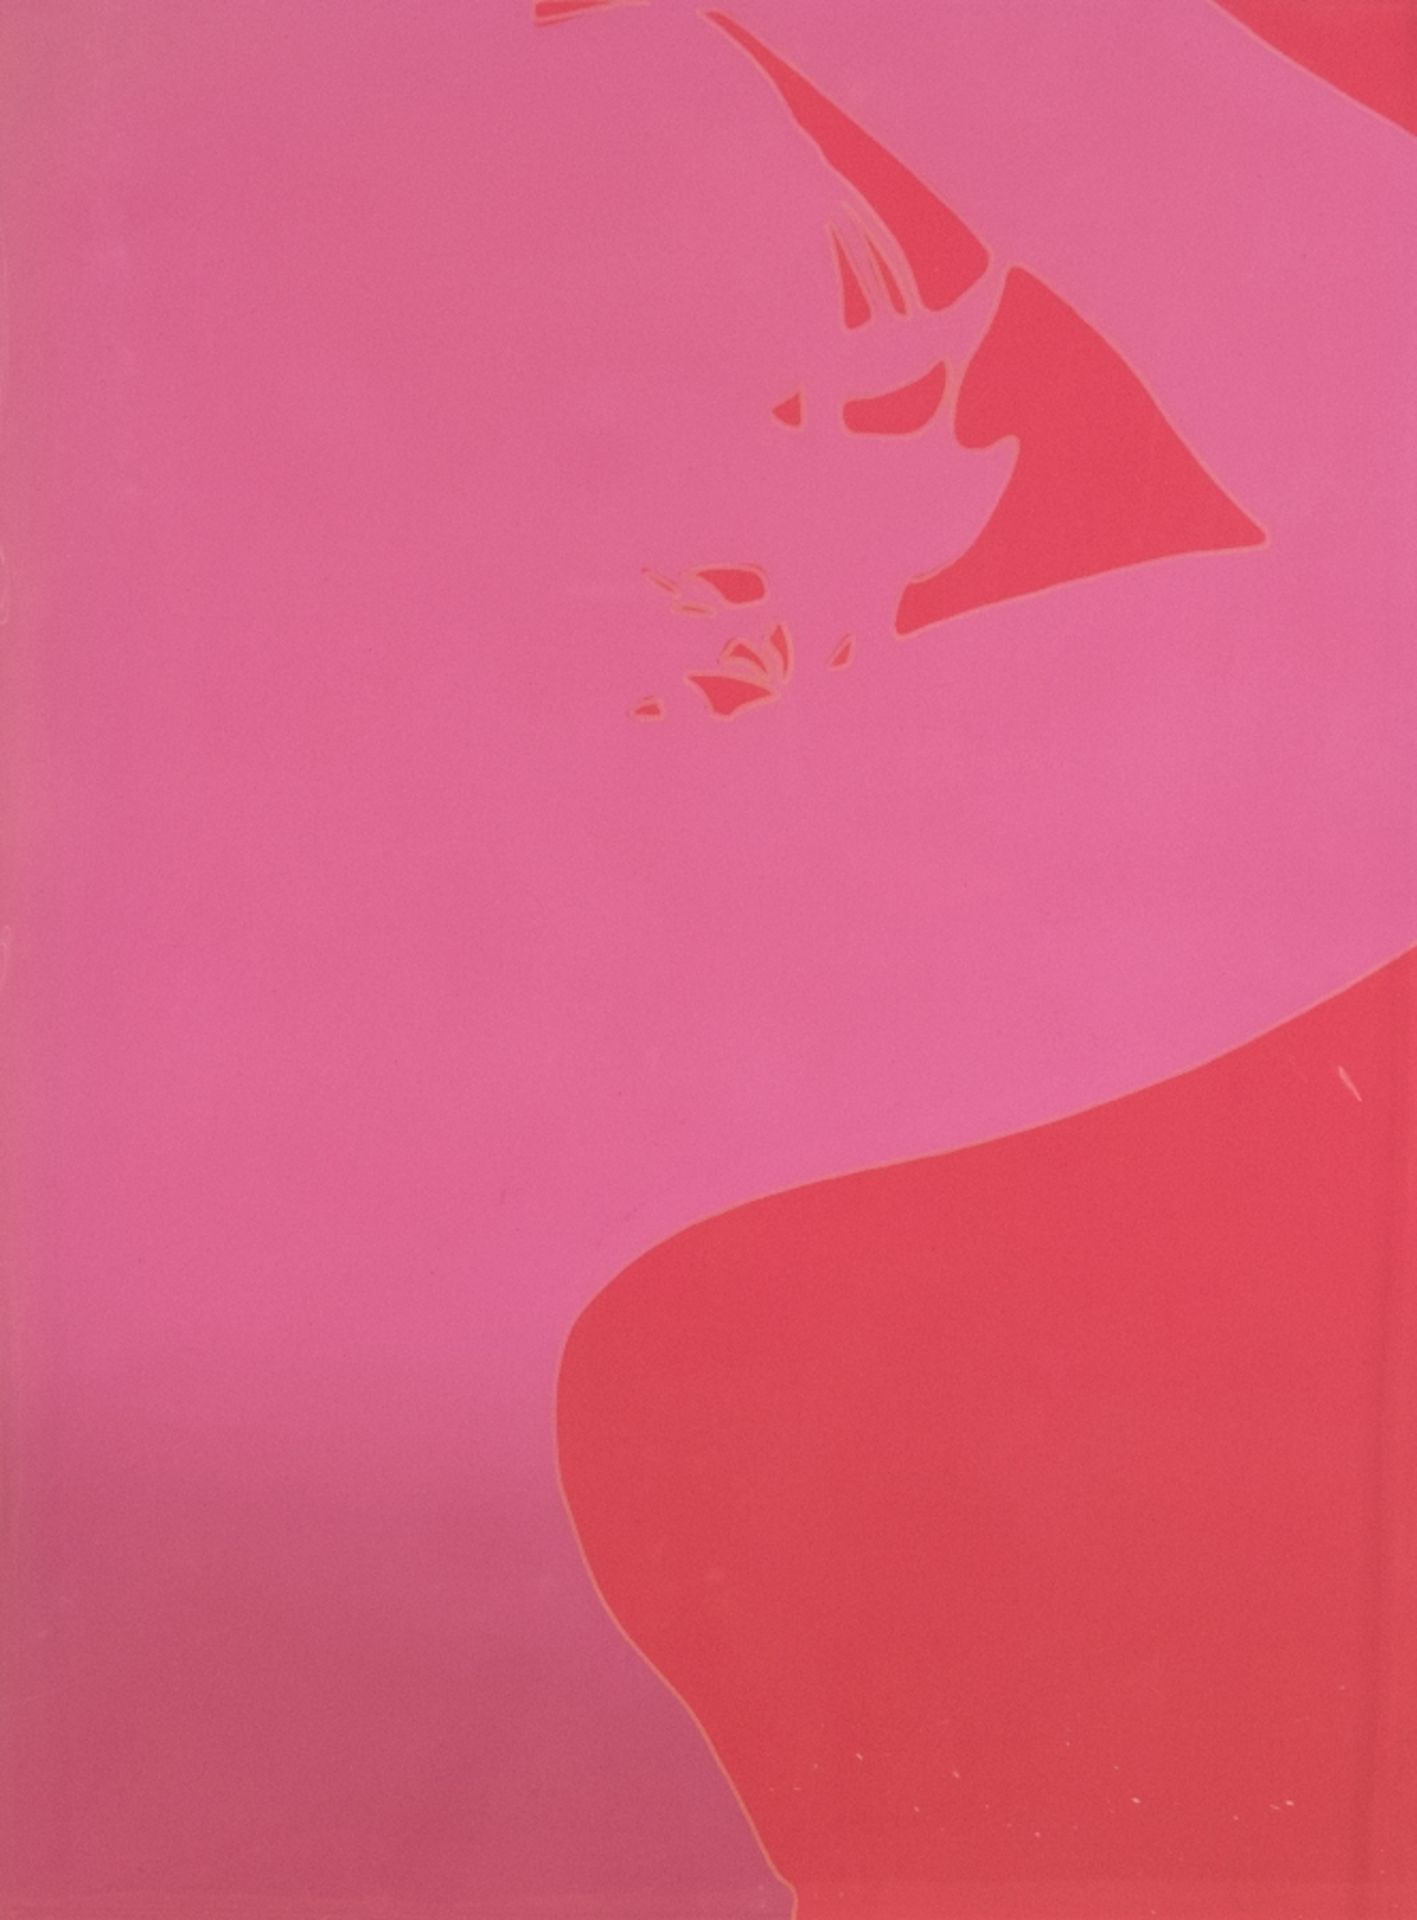 Lourdès Castro1930SilhouetteSiebdruck auf farbiger PVC-Folie; H 430 mm, B 325 mm; Ritzs